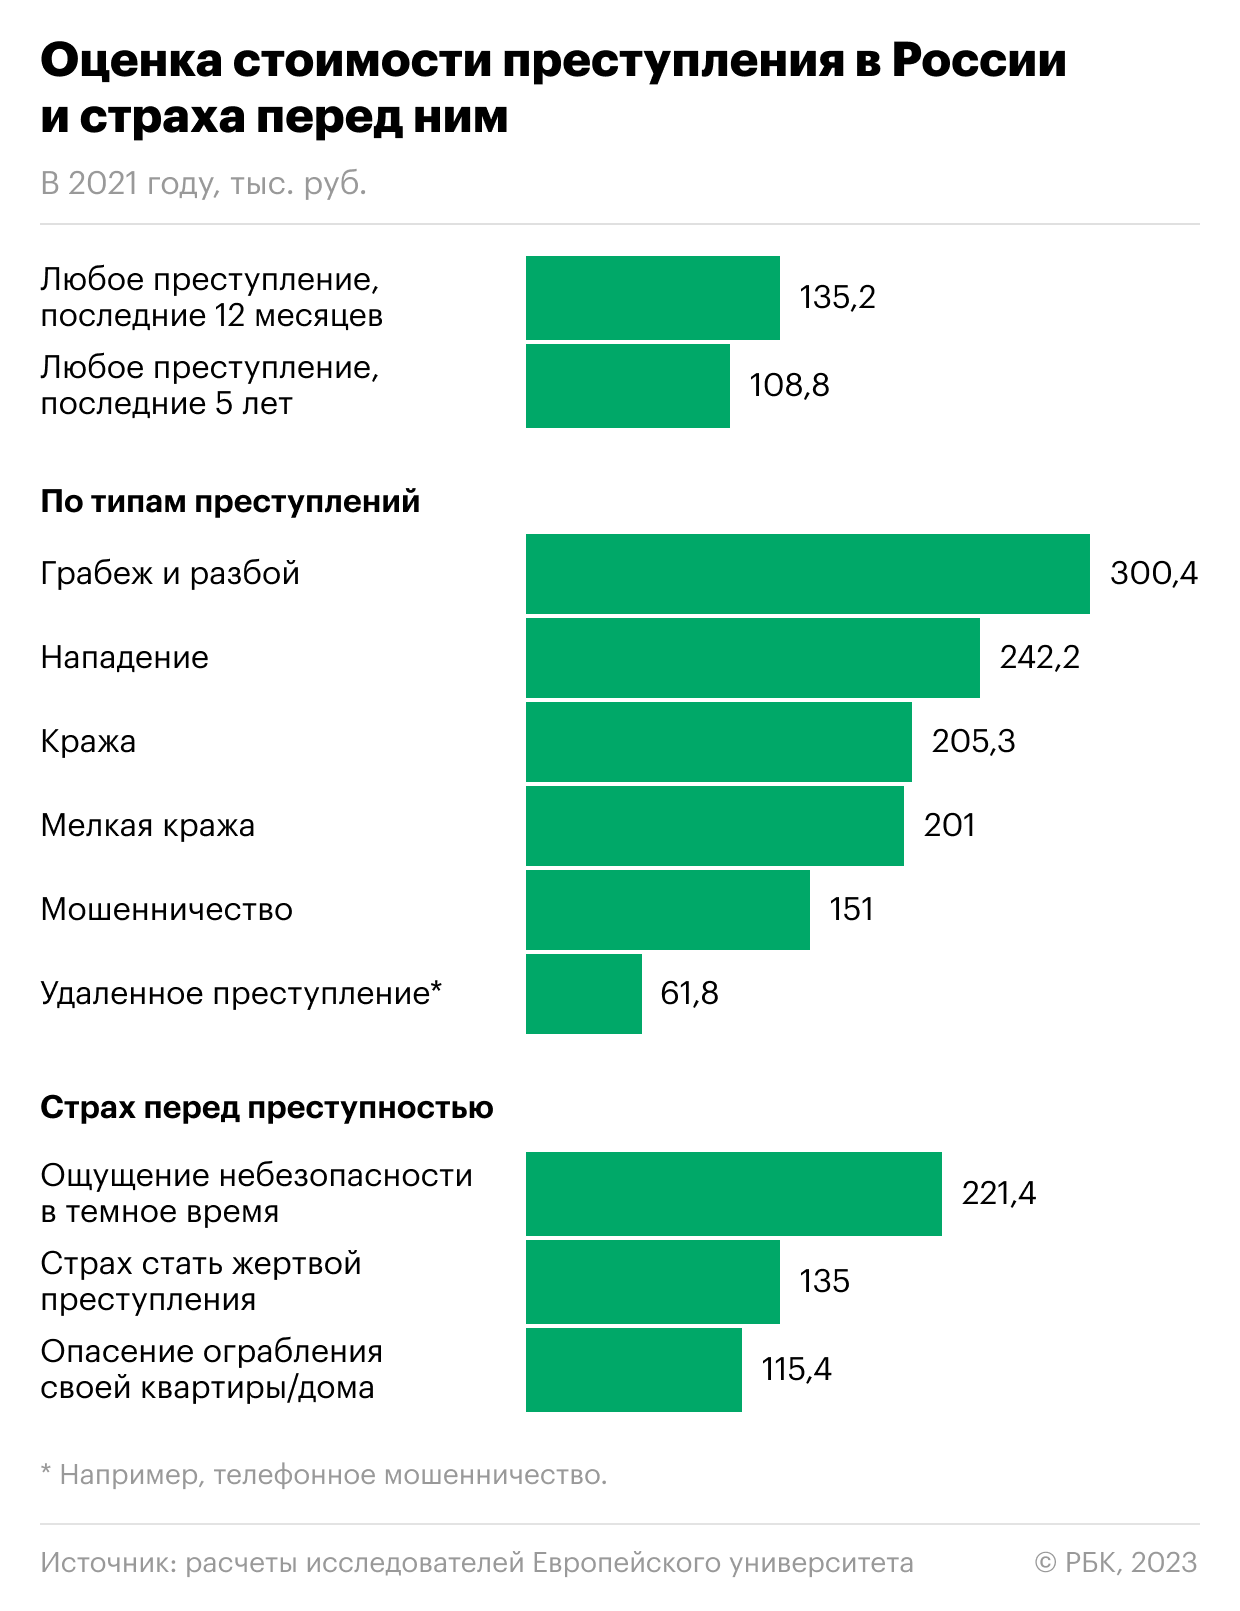 Как россияне оценили «цену» преступлений против себя. Инфографика